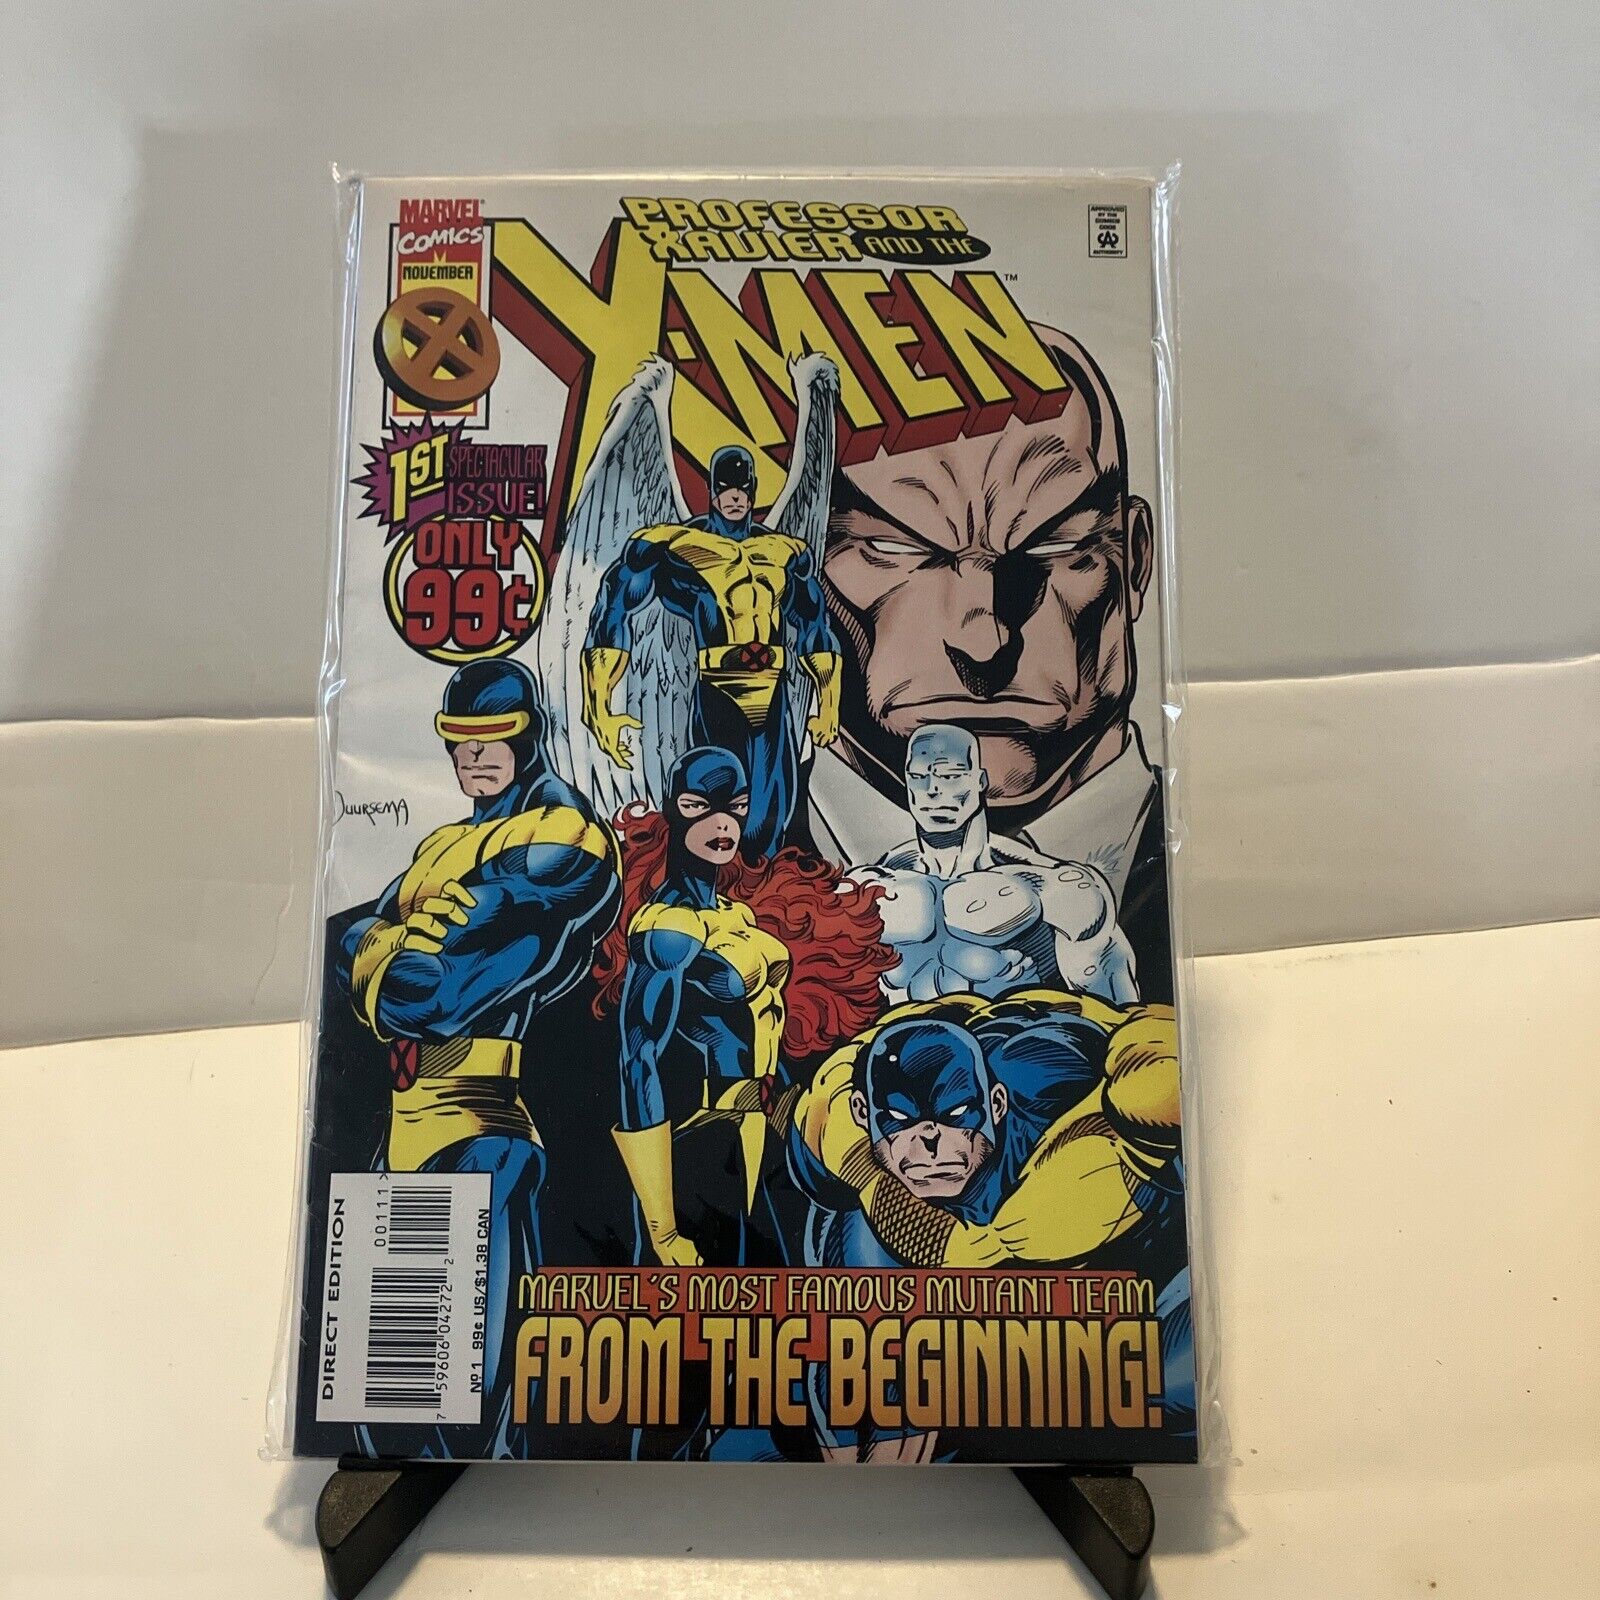 Professor Xavier and the X-Men #1 (Marvel, November 1995)